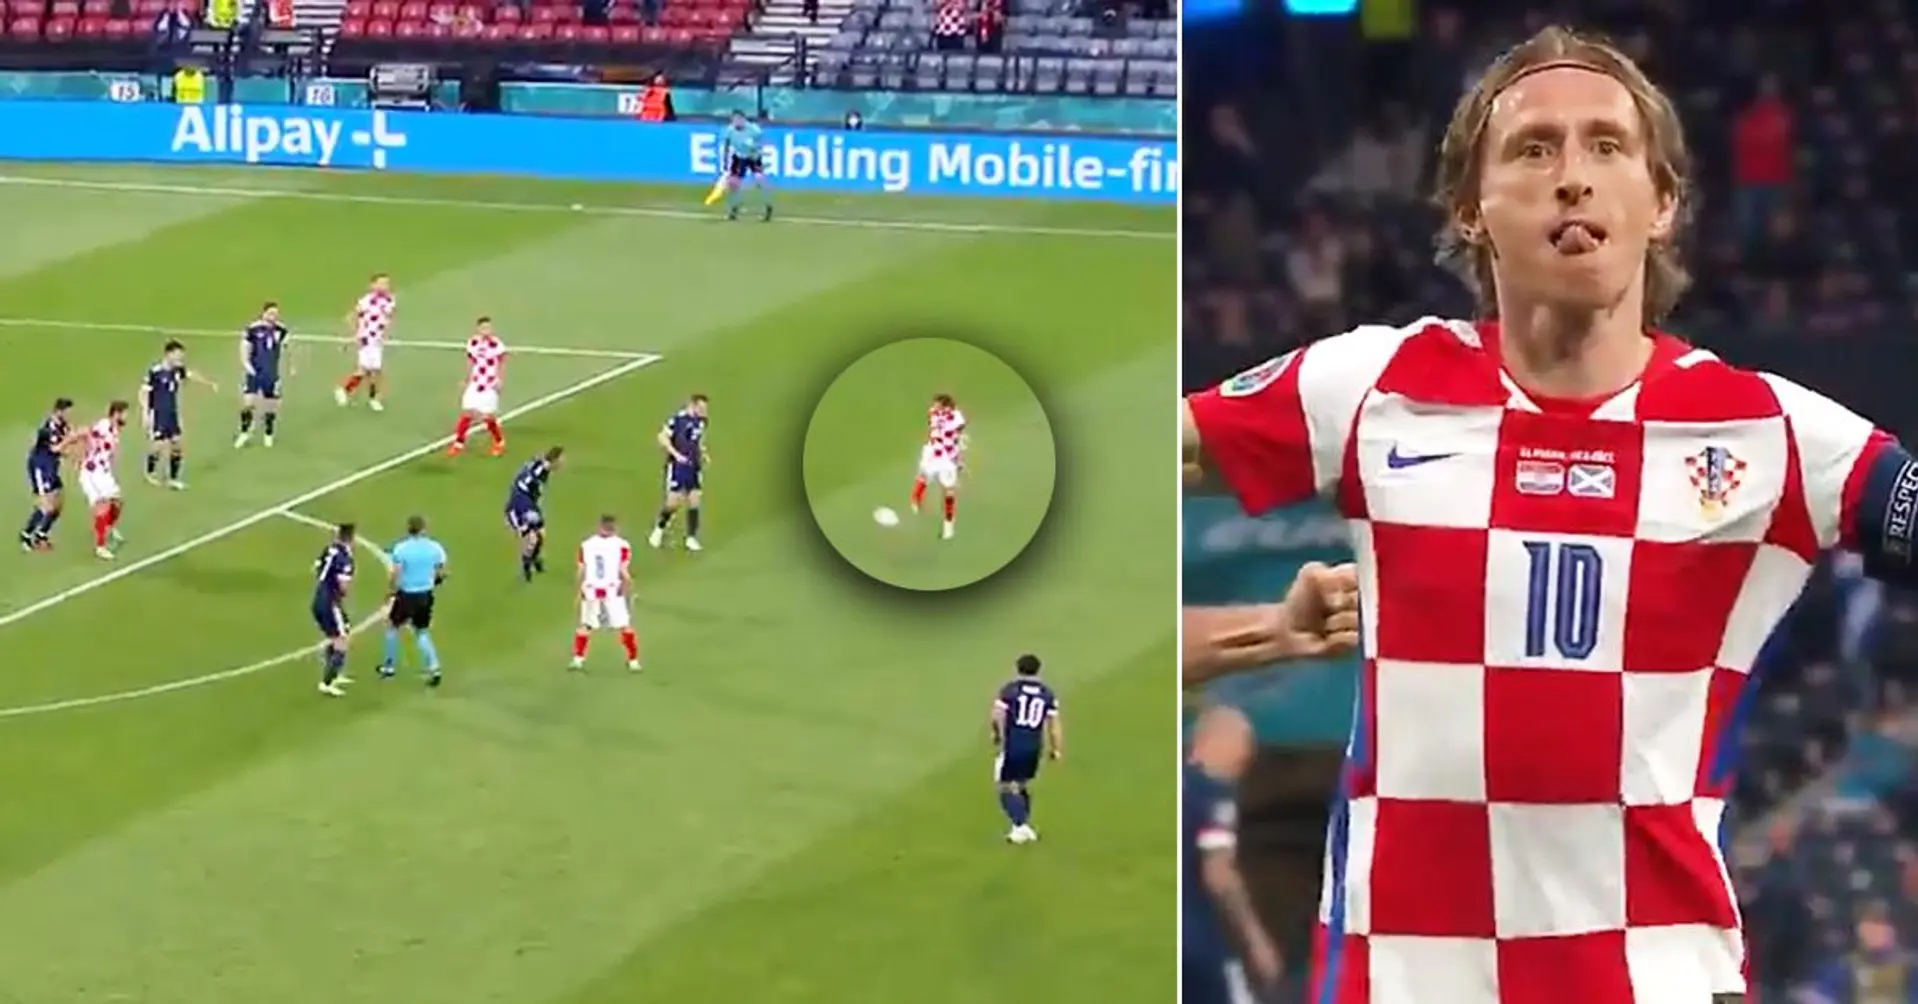 Luka Modric stordisce la Scozia con un goal inaspettato in stile Quaresma 9 secondi dopo aver passato il pallone allo stesso modo